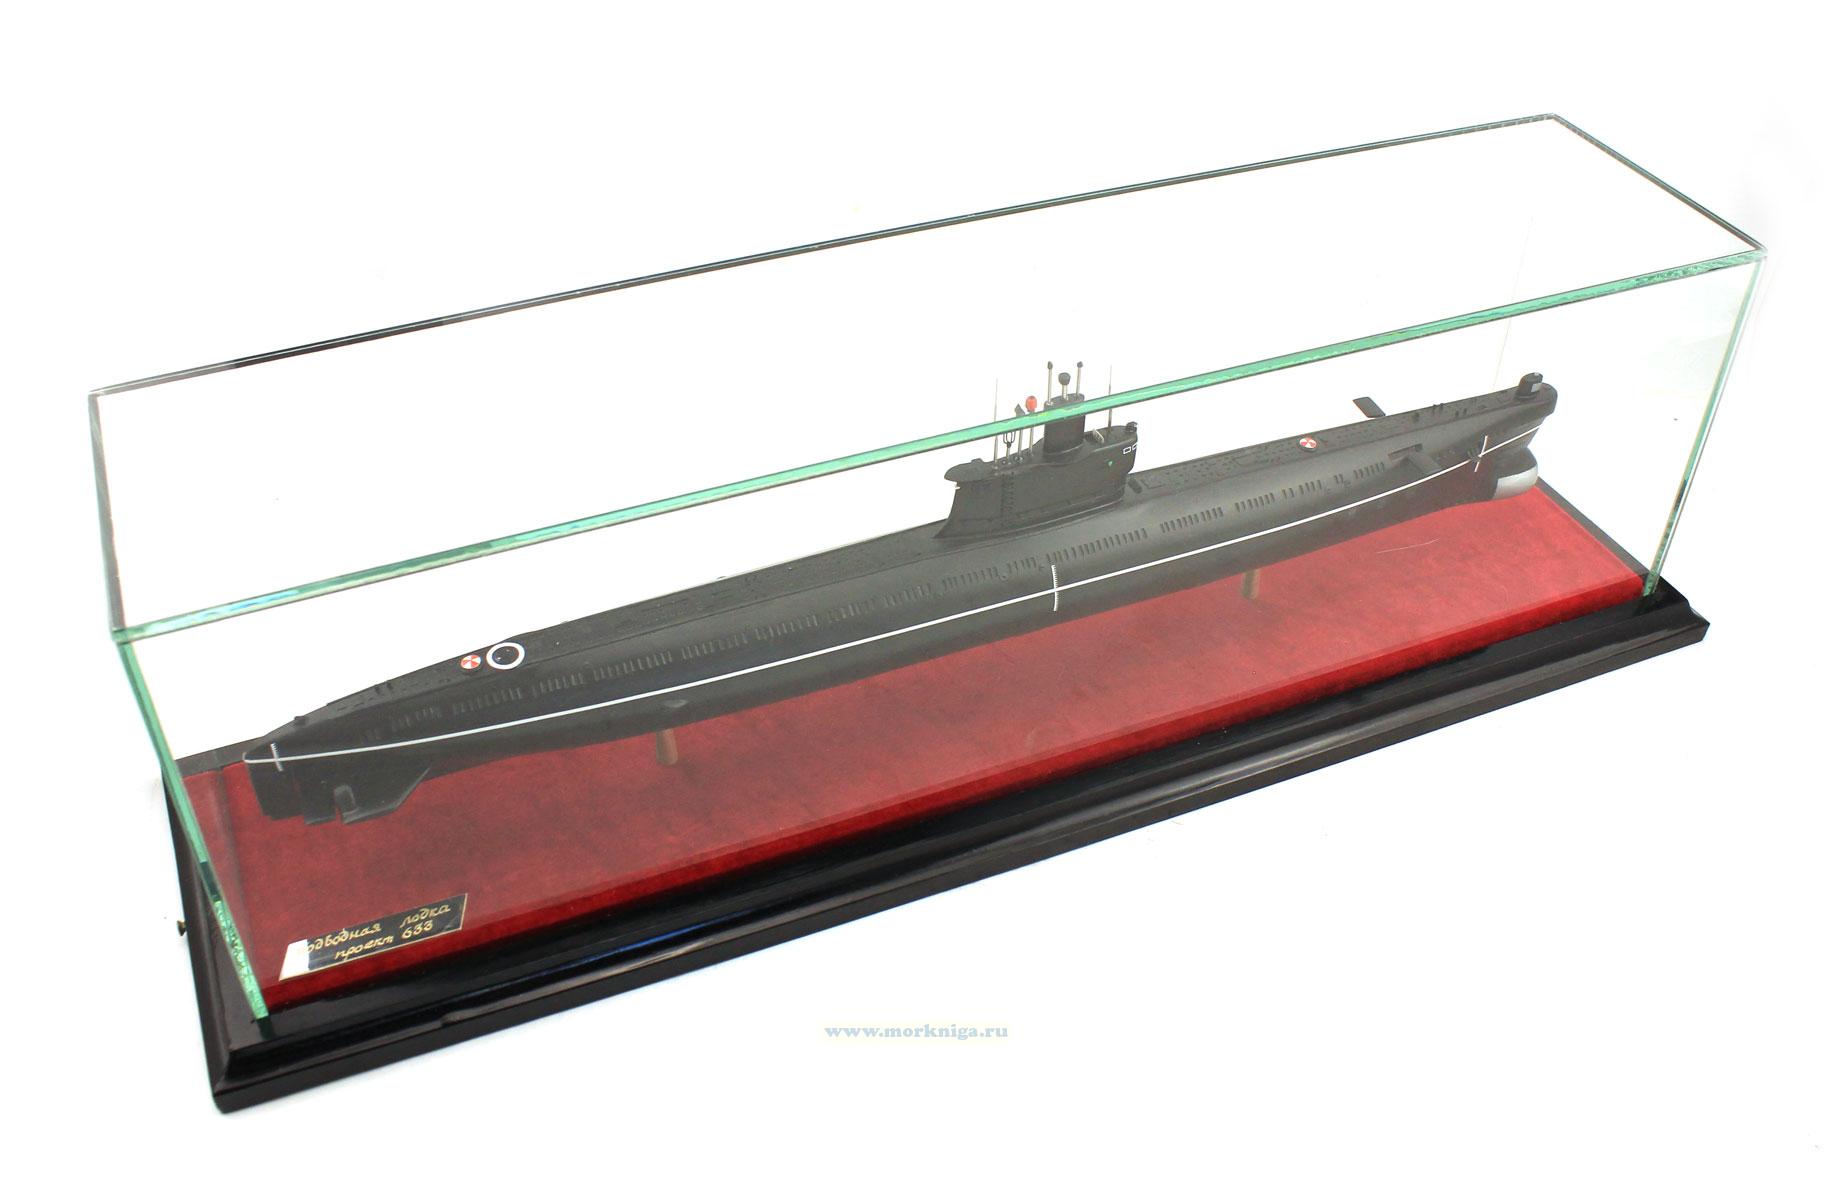 Модель дизель-электрической подводной лодки проекта 633